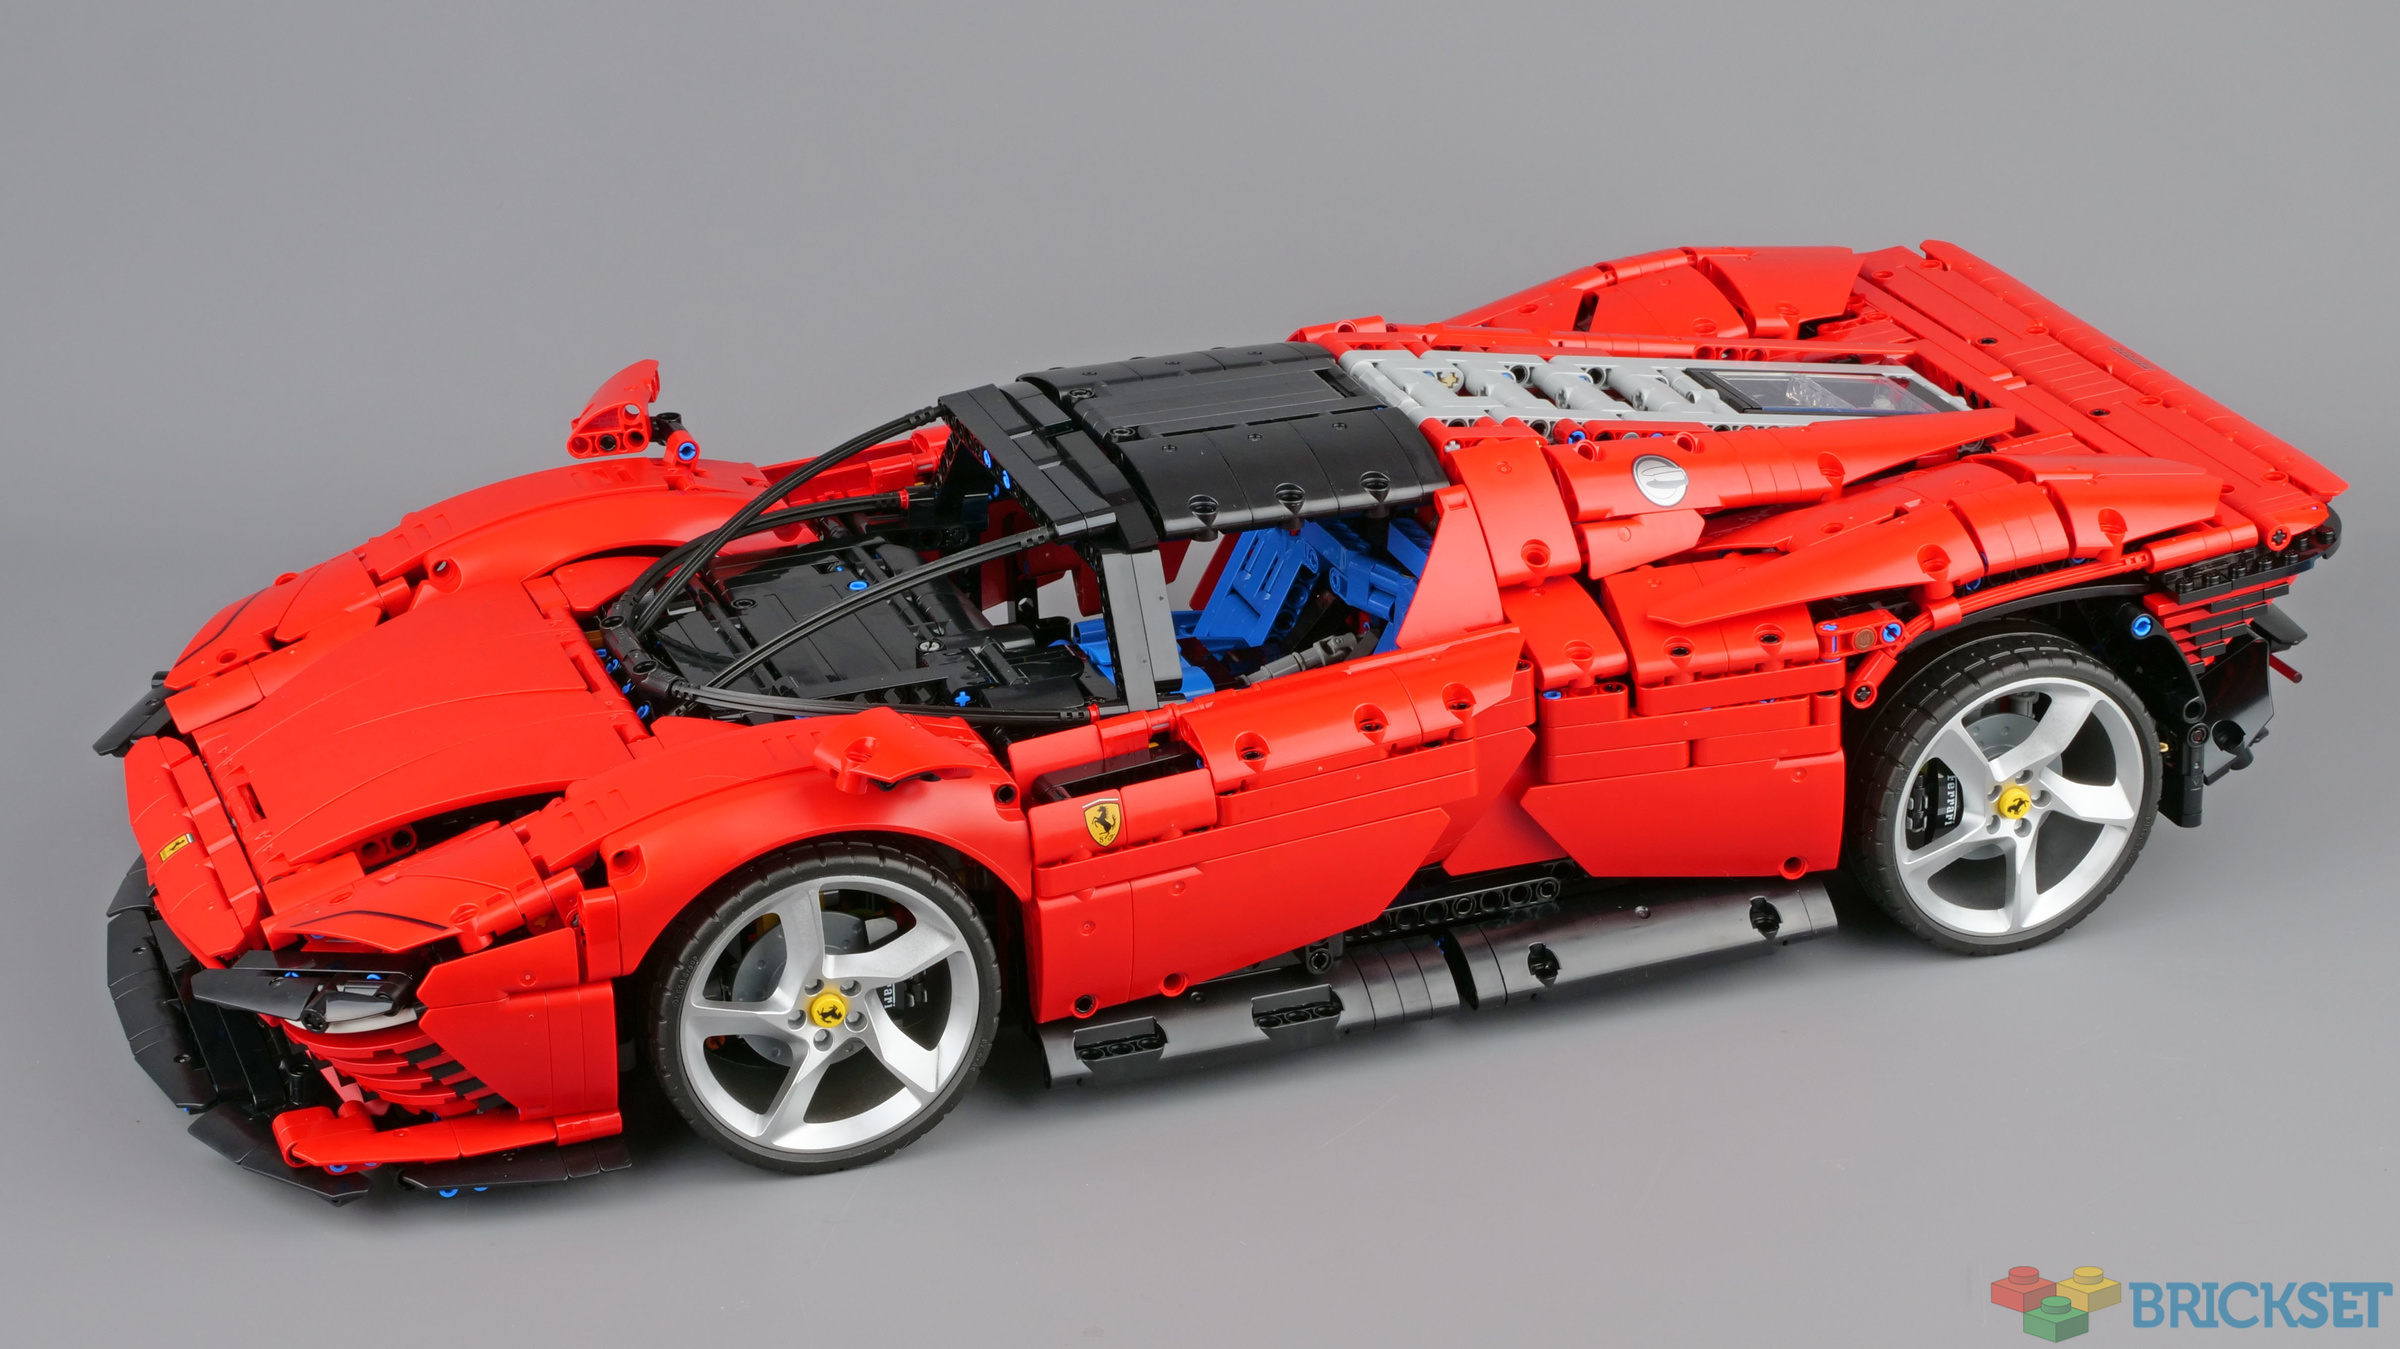 LEGO 42143 Ferrari Daytona SP3 review